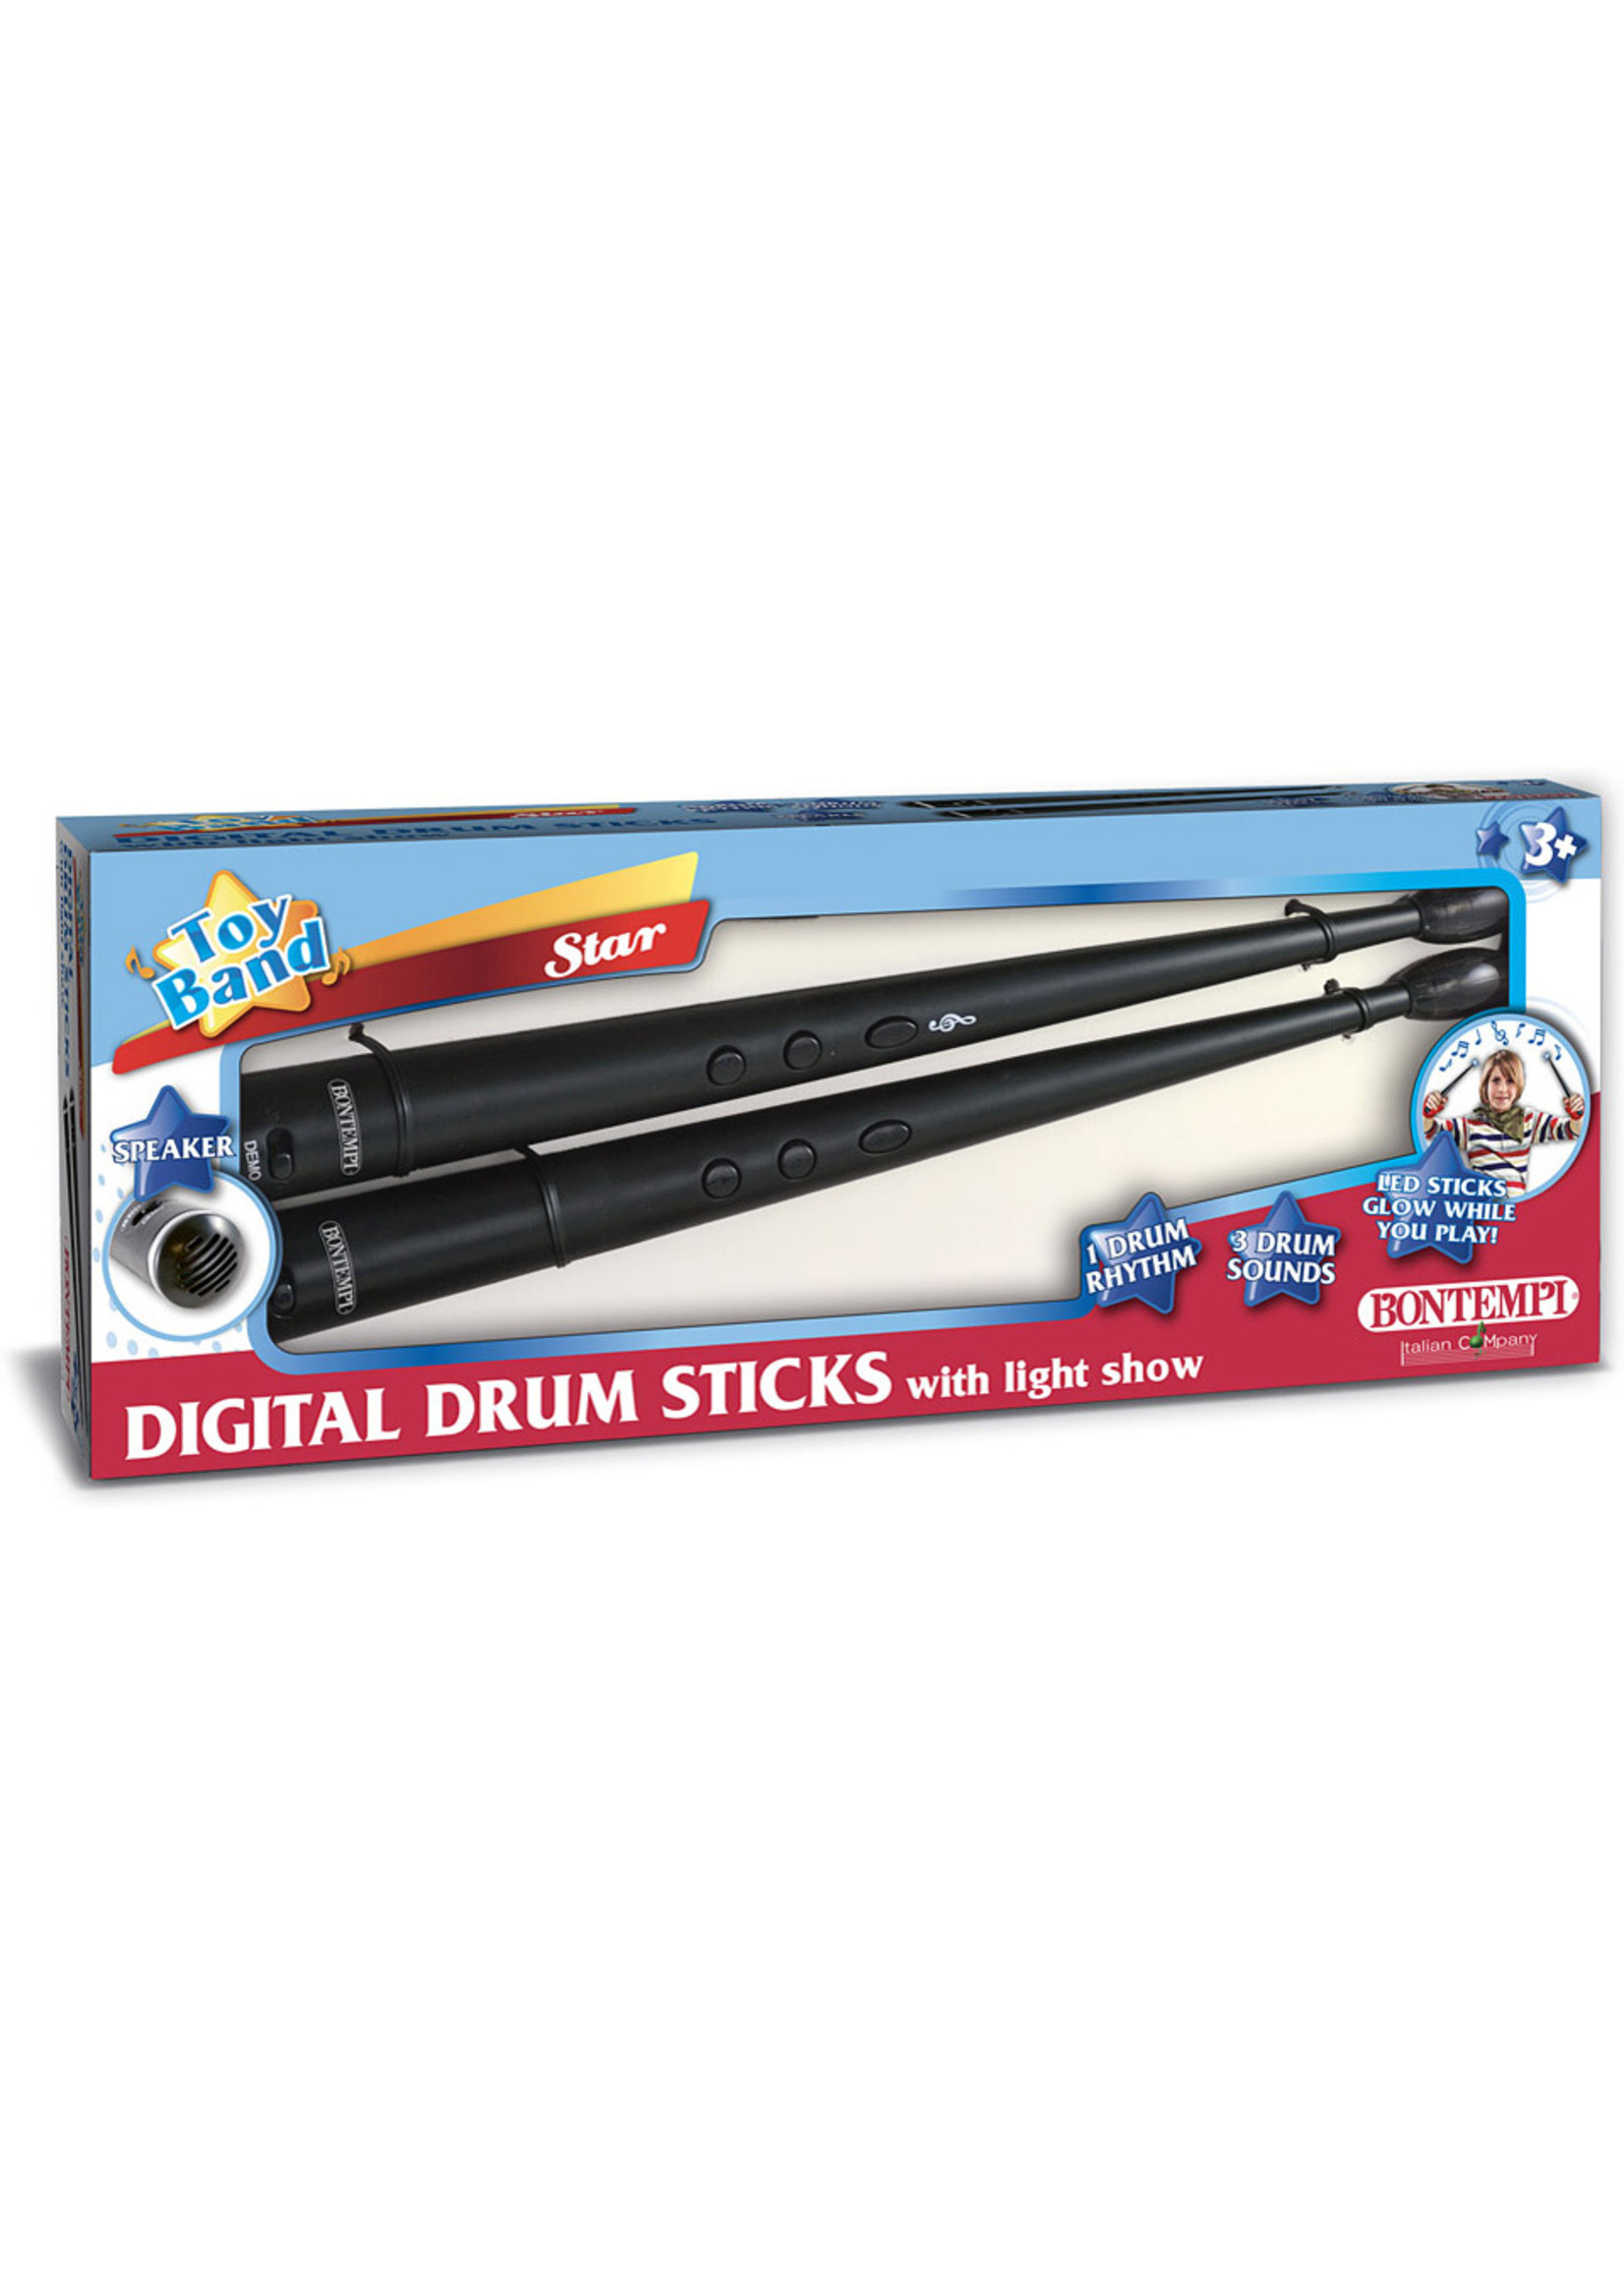 The Original Toy Company Bontempi Digital Drum Sticks